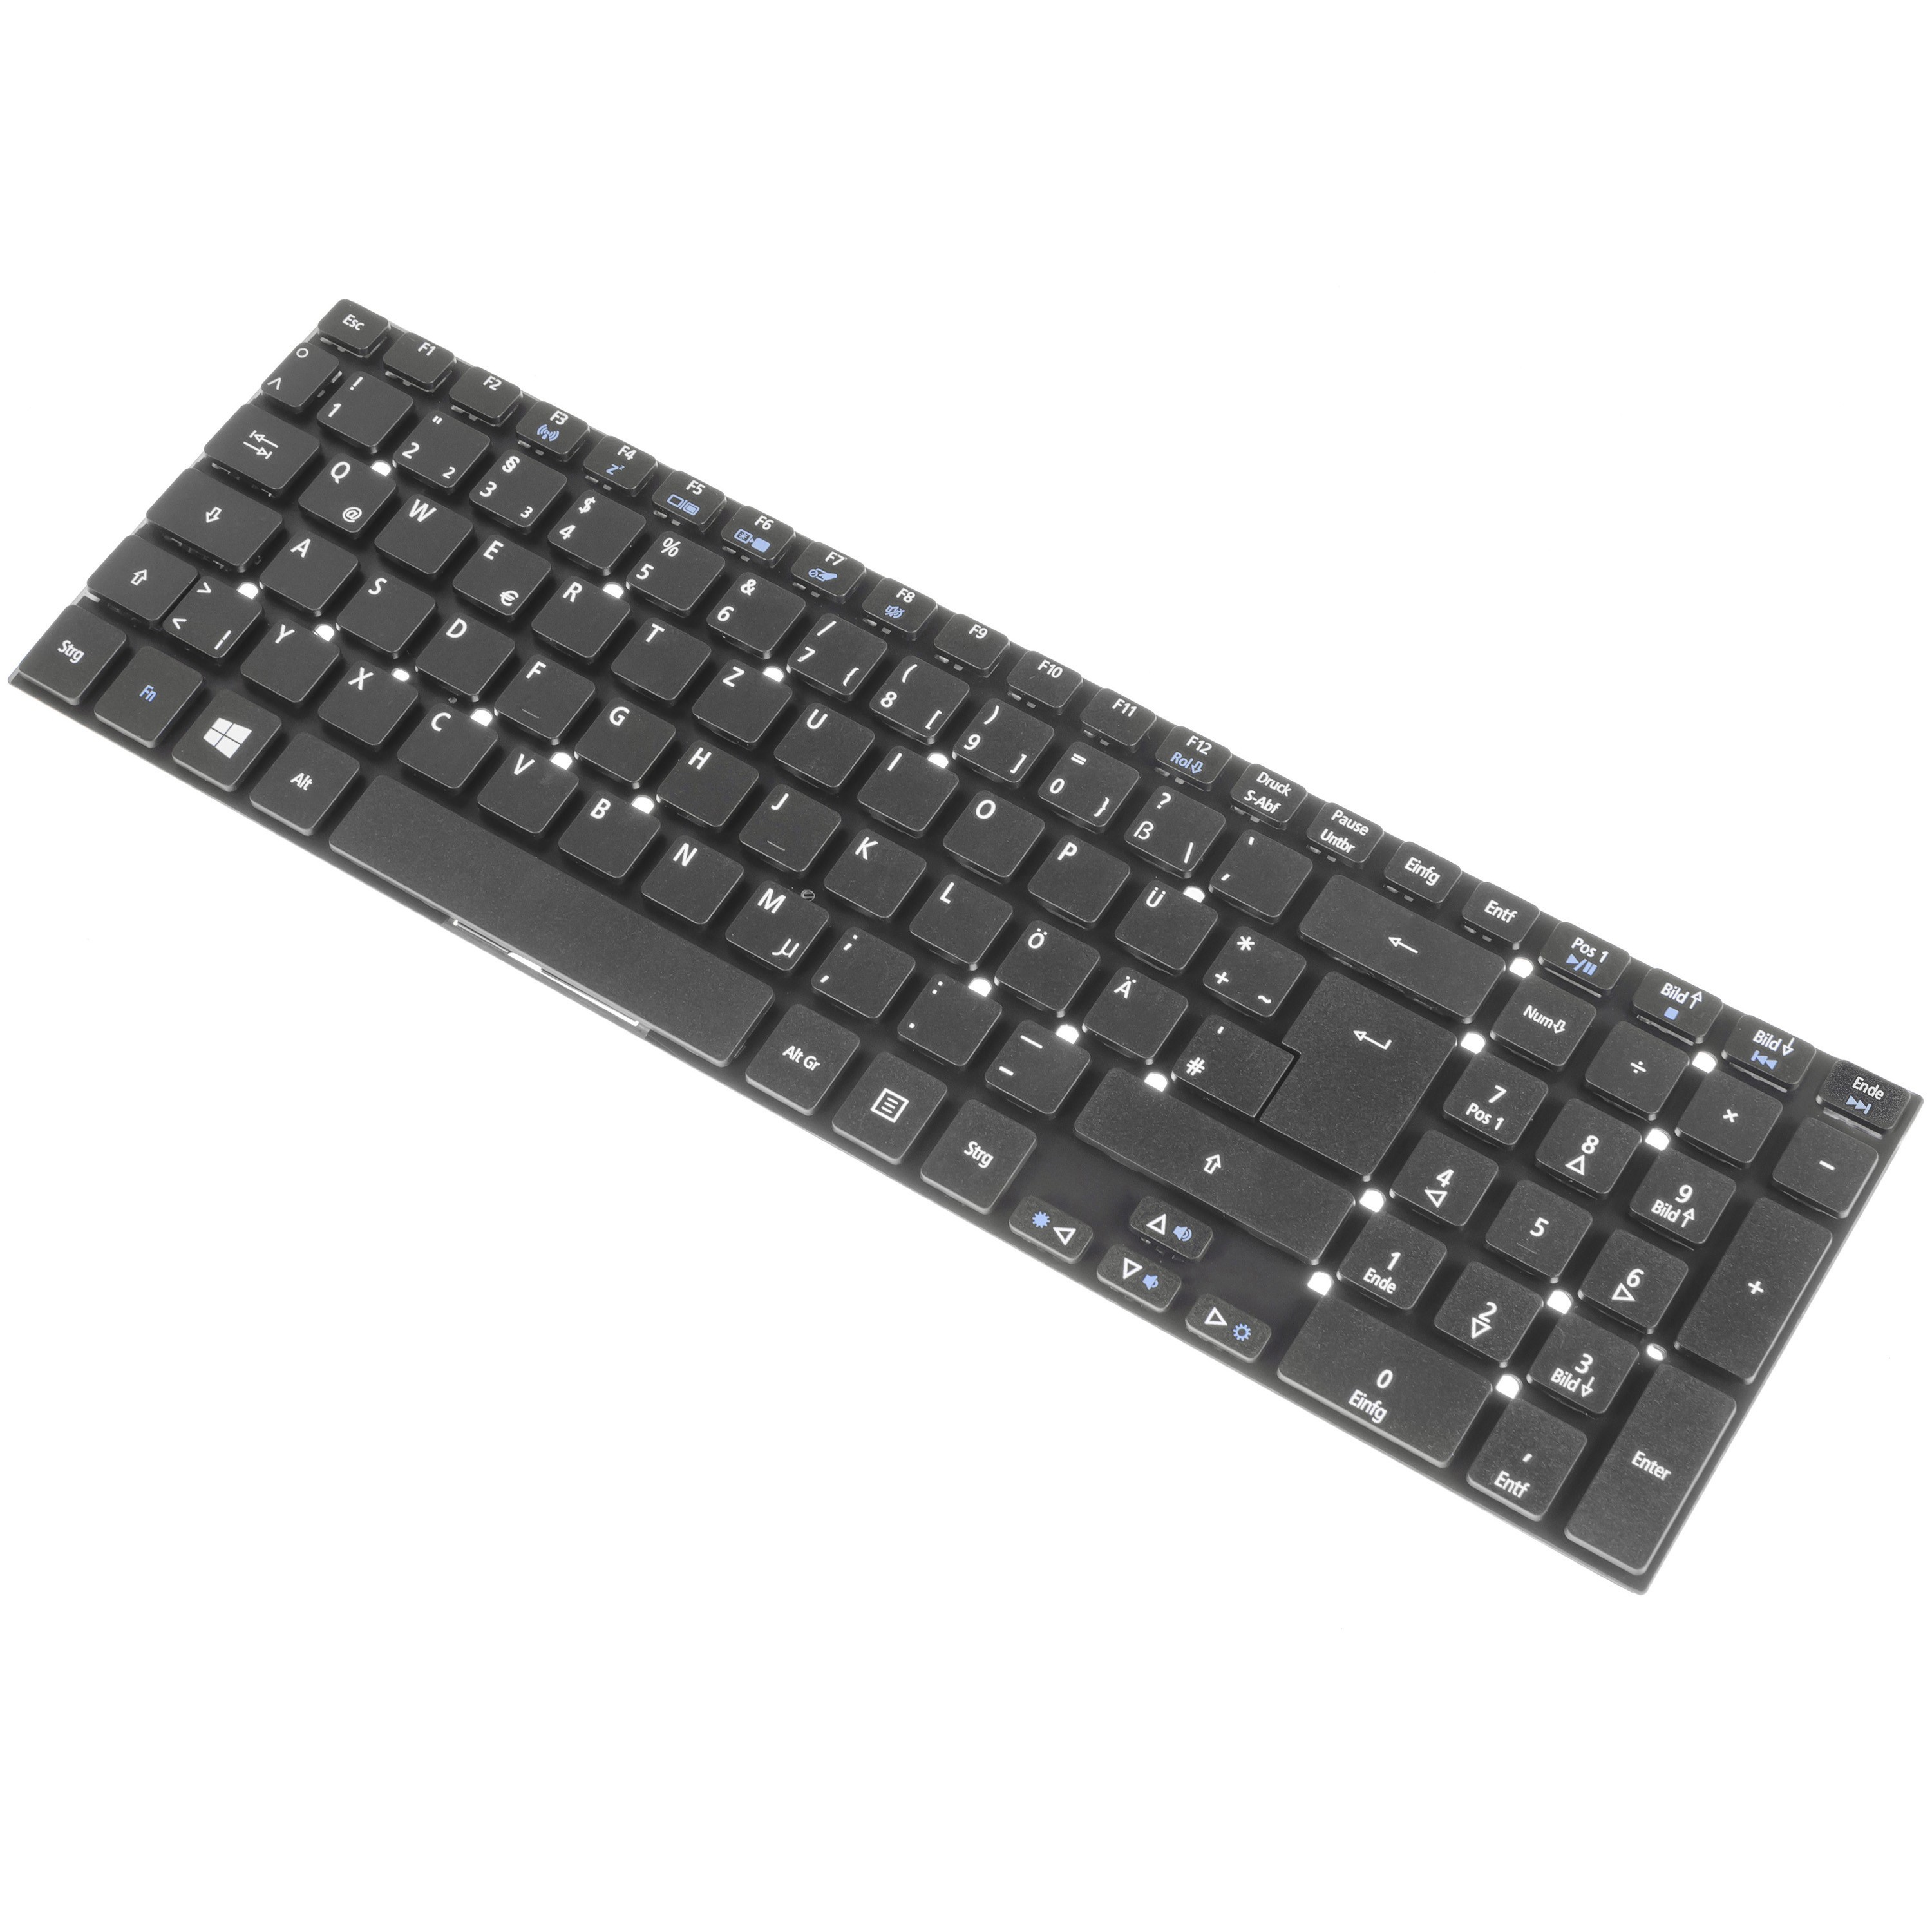 Green Cell Keyboard for Laptop Acer Aspire 5342 5755G E5-511 V3, Extensa 2508 2509 2510